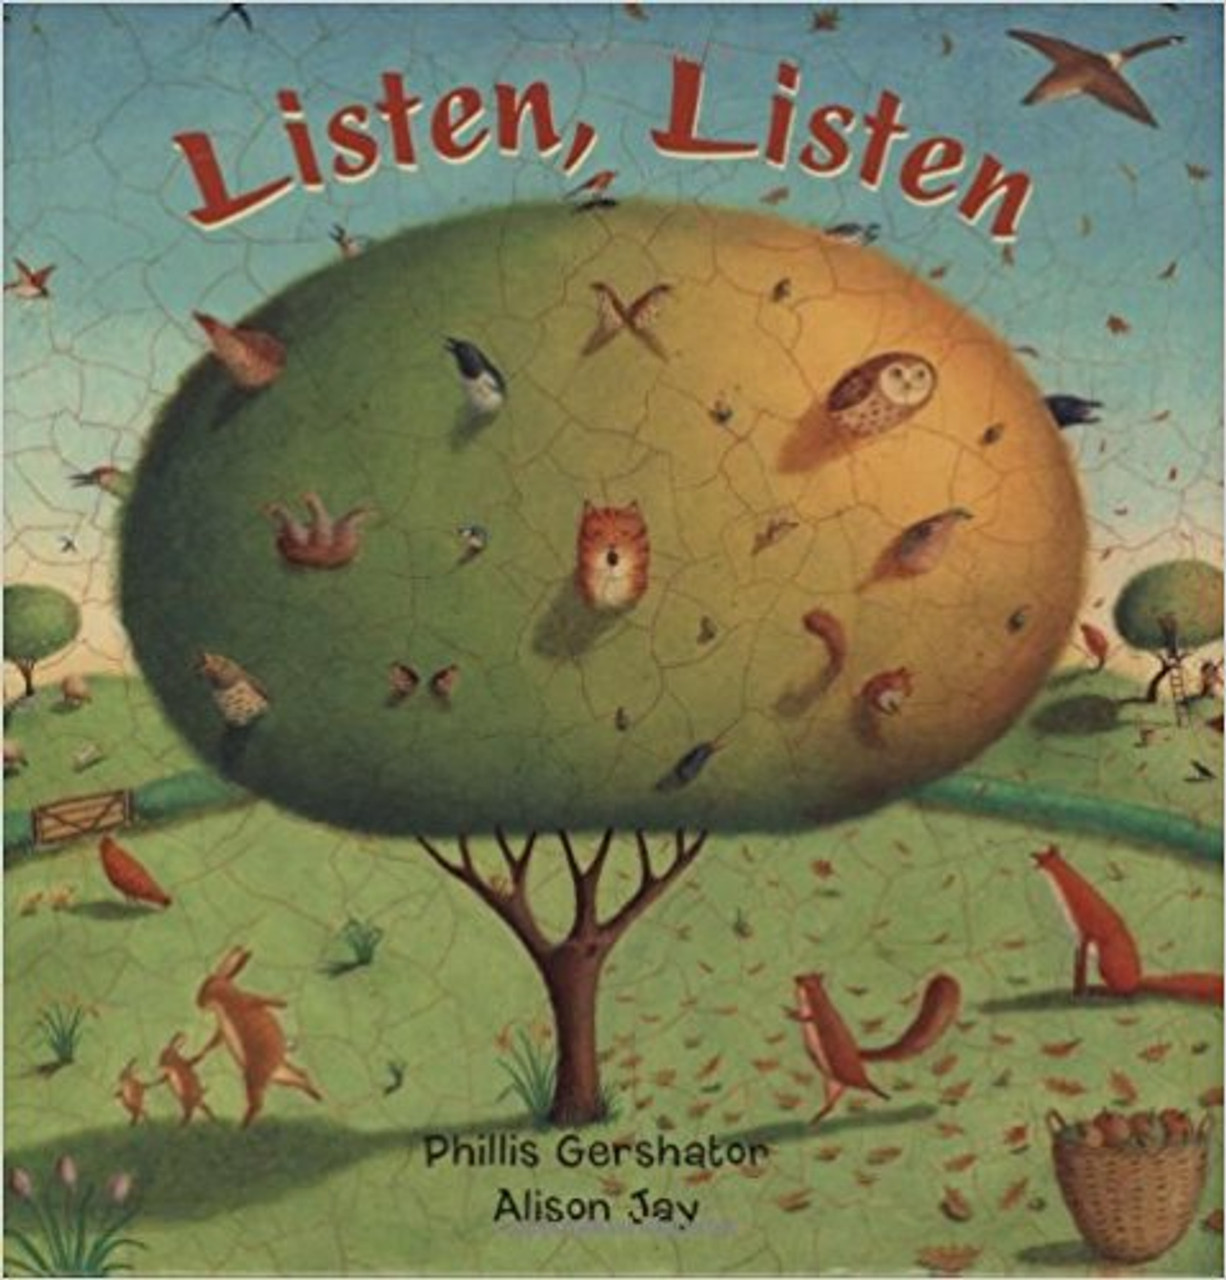 Listen, Listen by Phillis Gershator